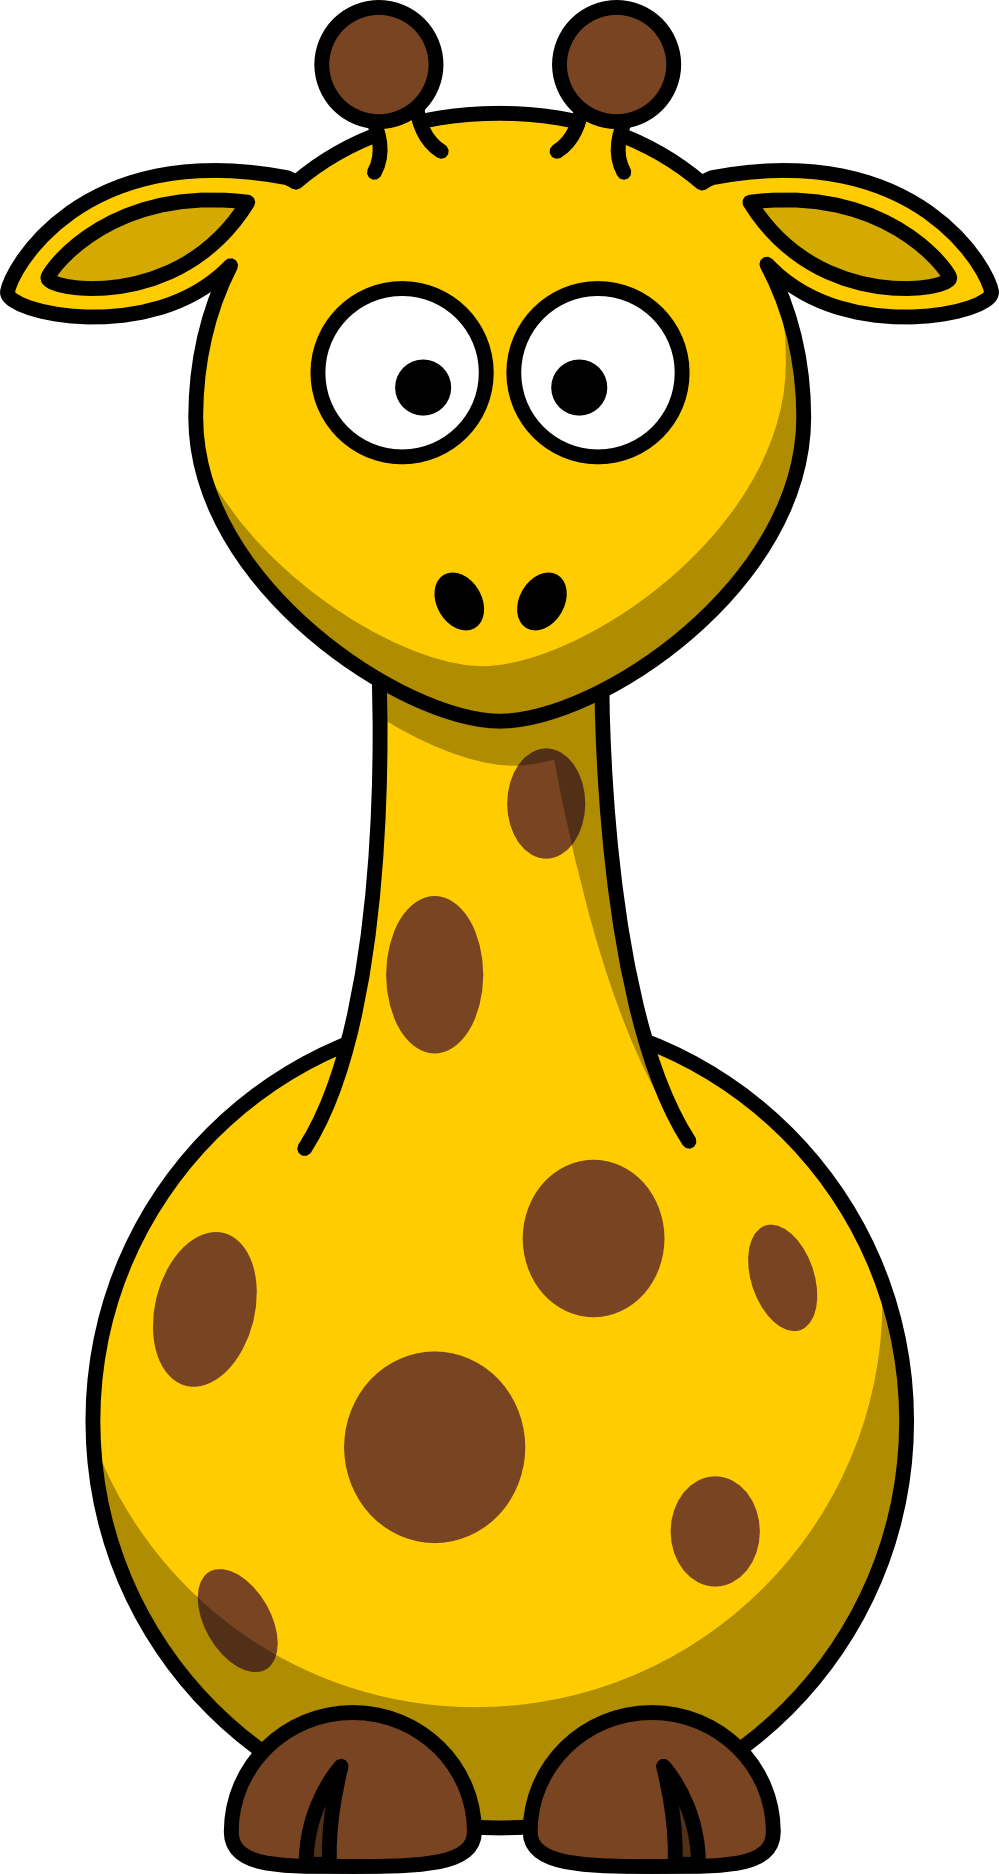 Giraffe clipart images clipart